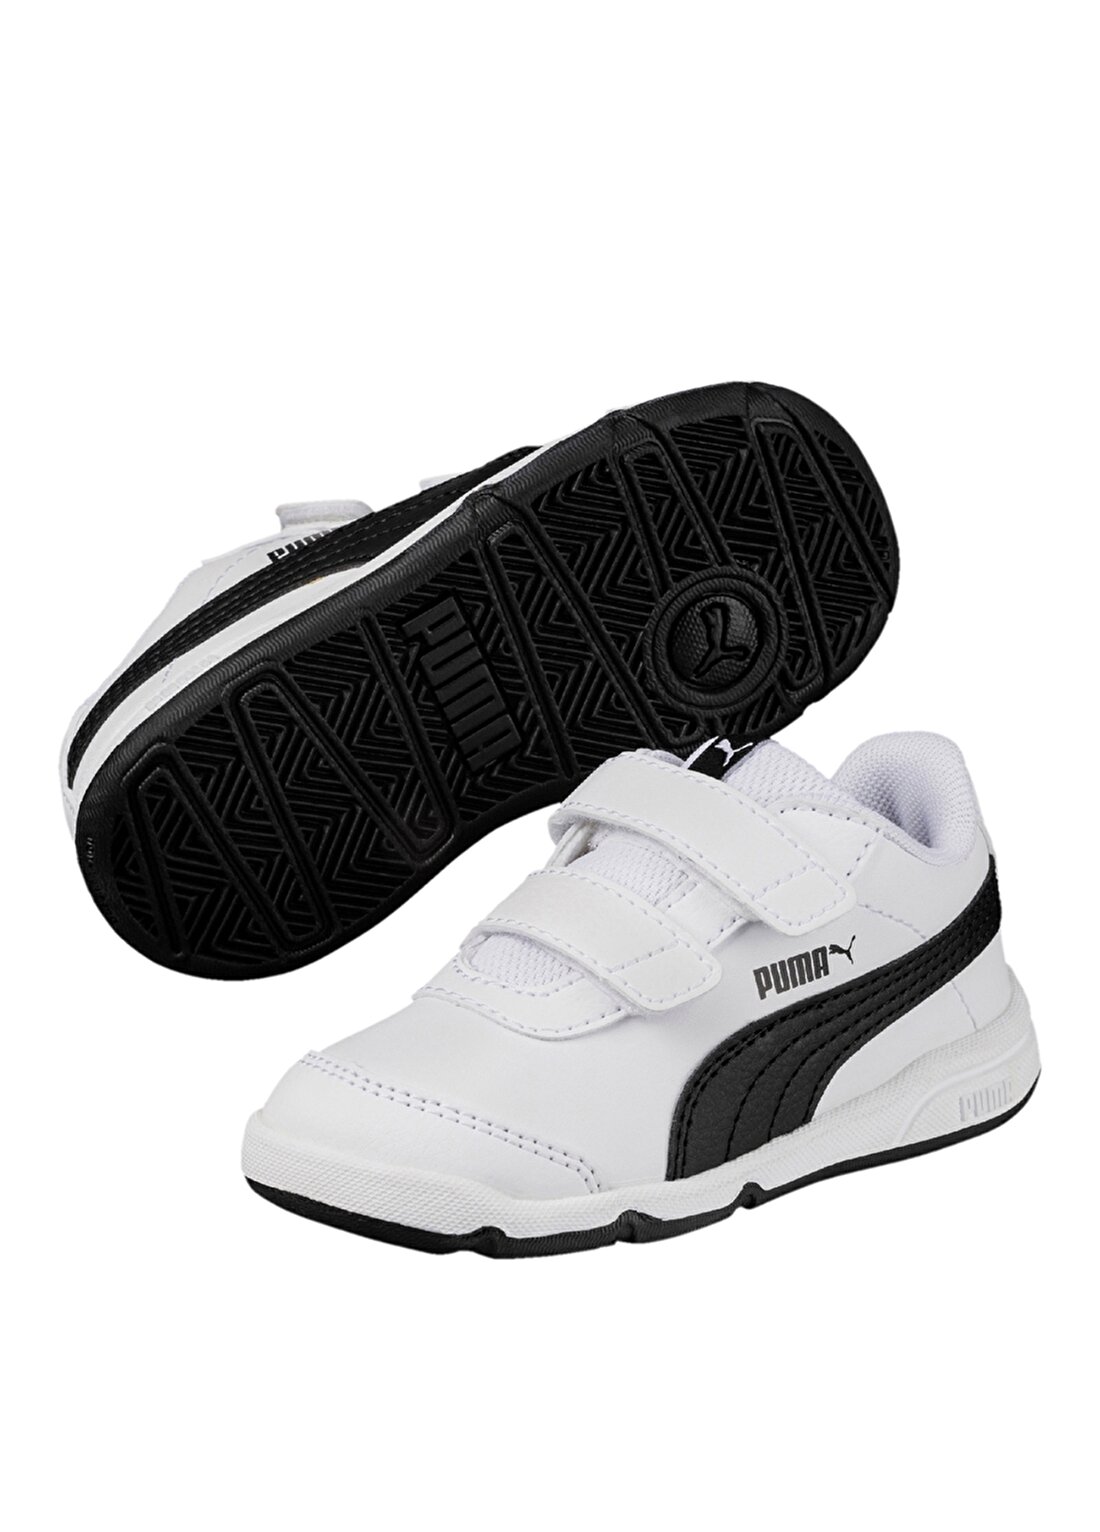 Puma 19011406 Stepfleex 2 Sl V Ps Beyaz - Siyah Erkek Çocuk Yürüyüş Ayakkabısı